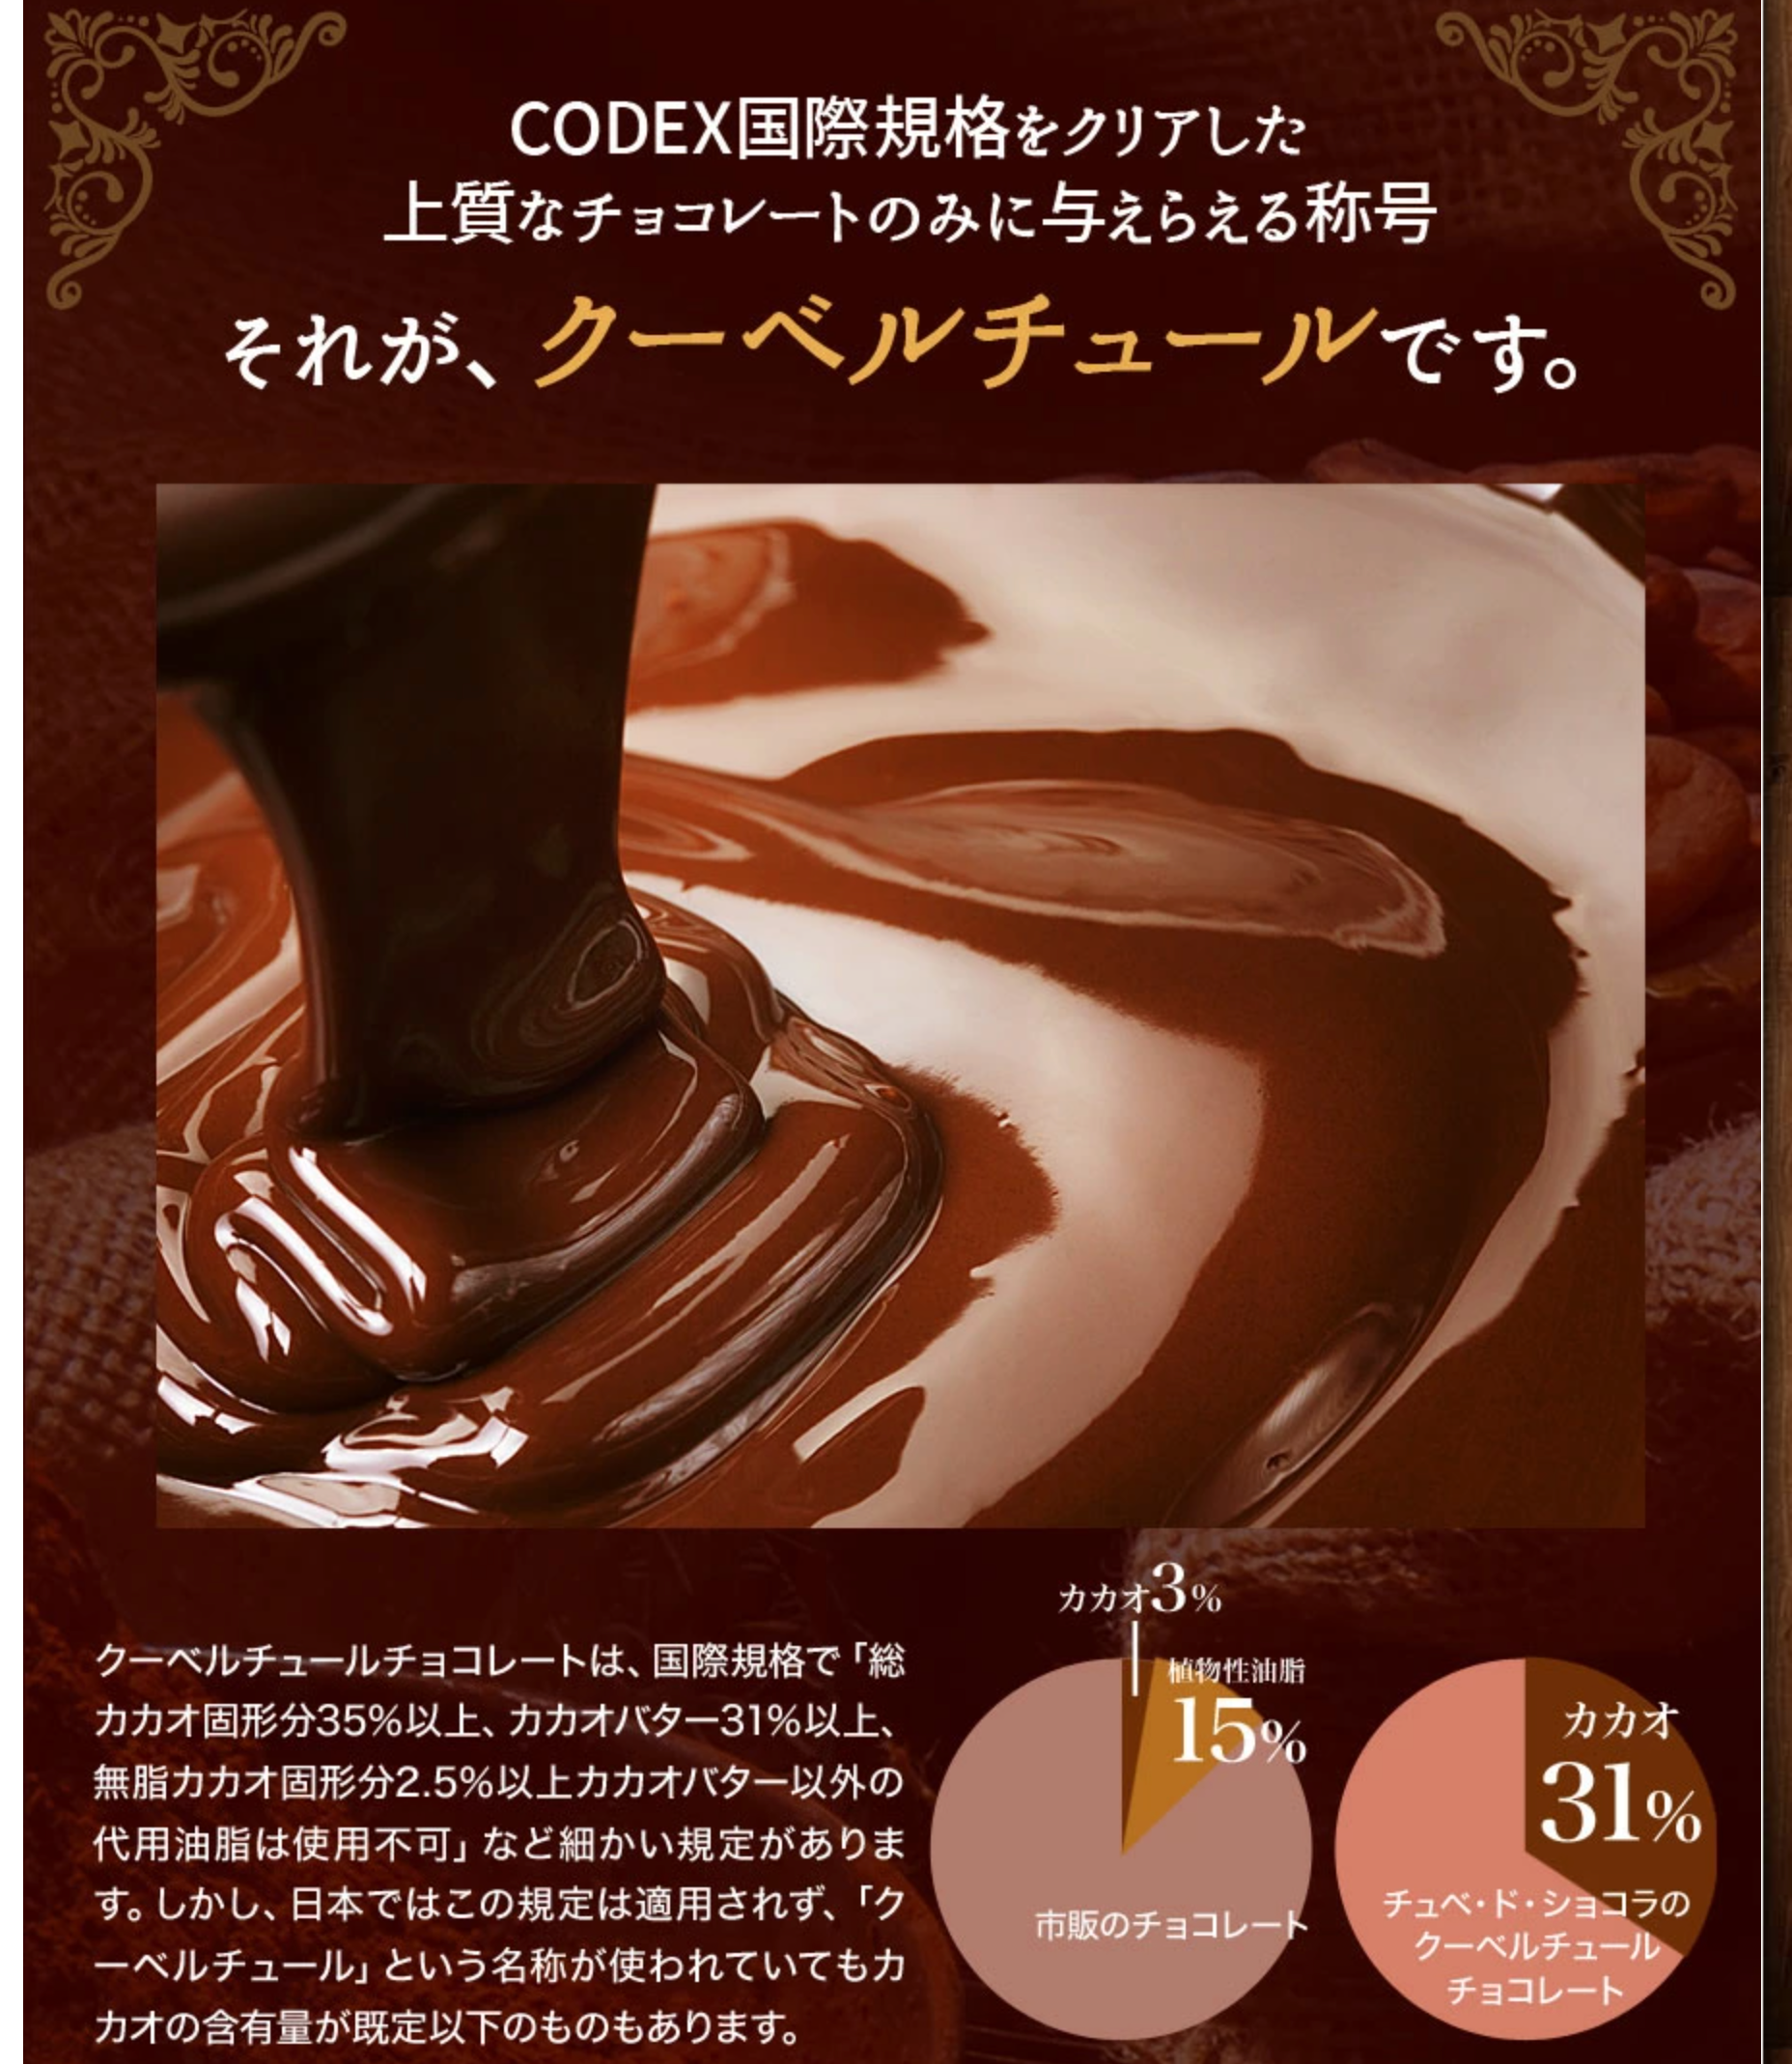 2送料無料【割れチョコミックス12種】-1kg-チュベ・ド・ショコラ-割れチョコ一覧-チュベ・ド・ショコラ